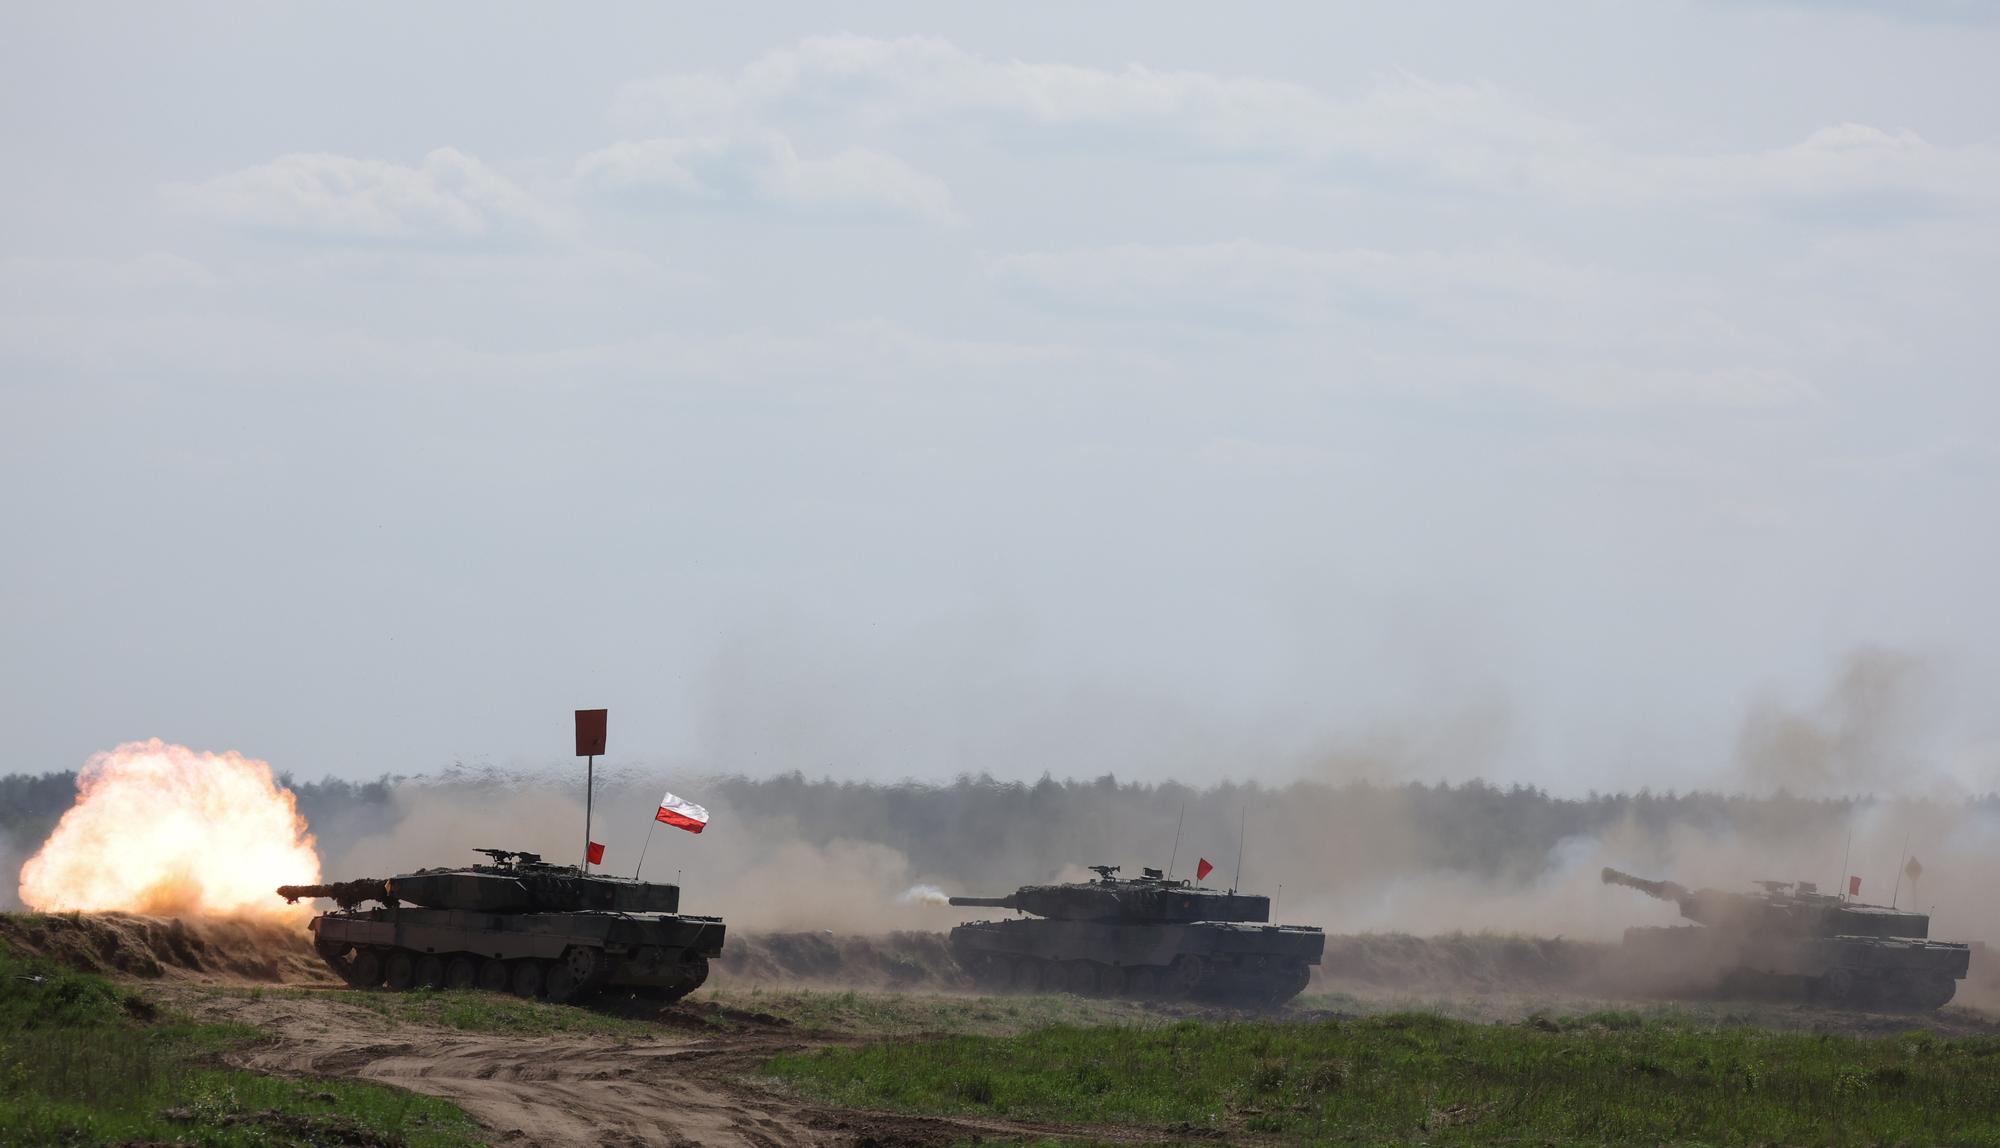 Des chars Leopard 2PL de l'armée polonaise lors d'un exercice de l'Otan, à Orzysz, en Pologne, le 24 mai 2022. [REUTERS - Kacper Pempel]